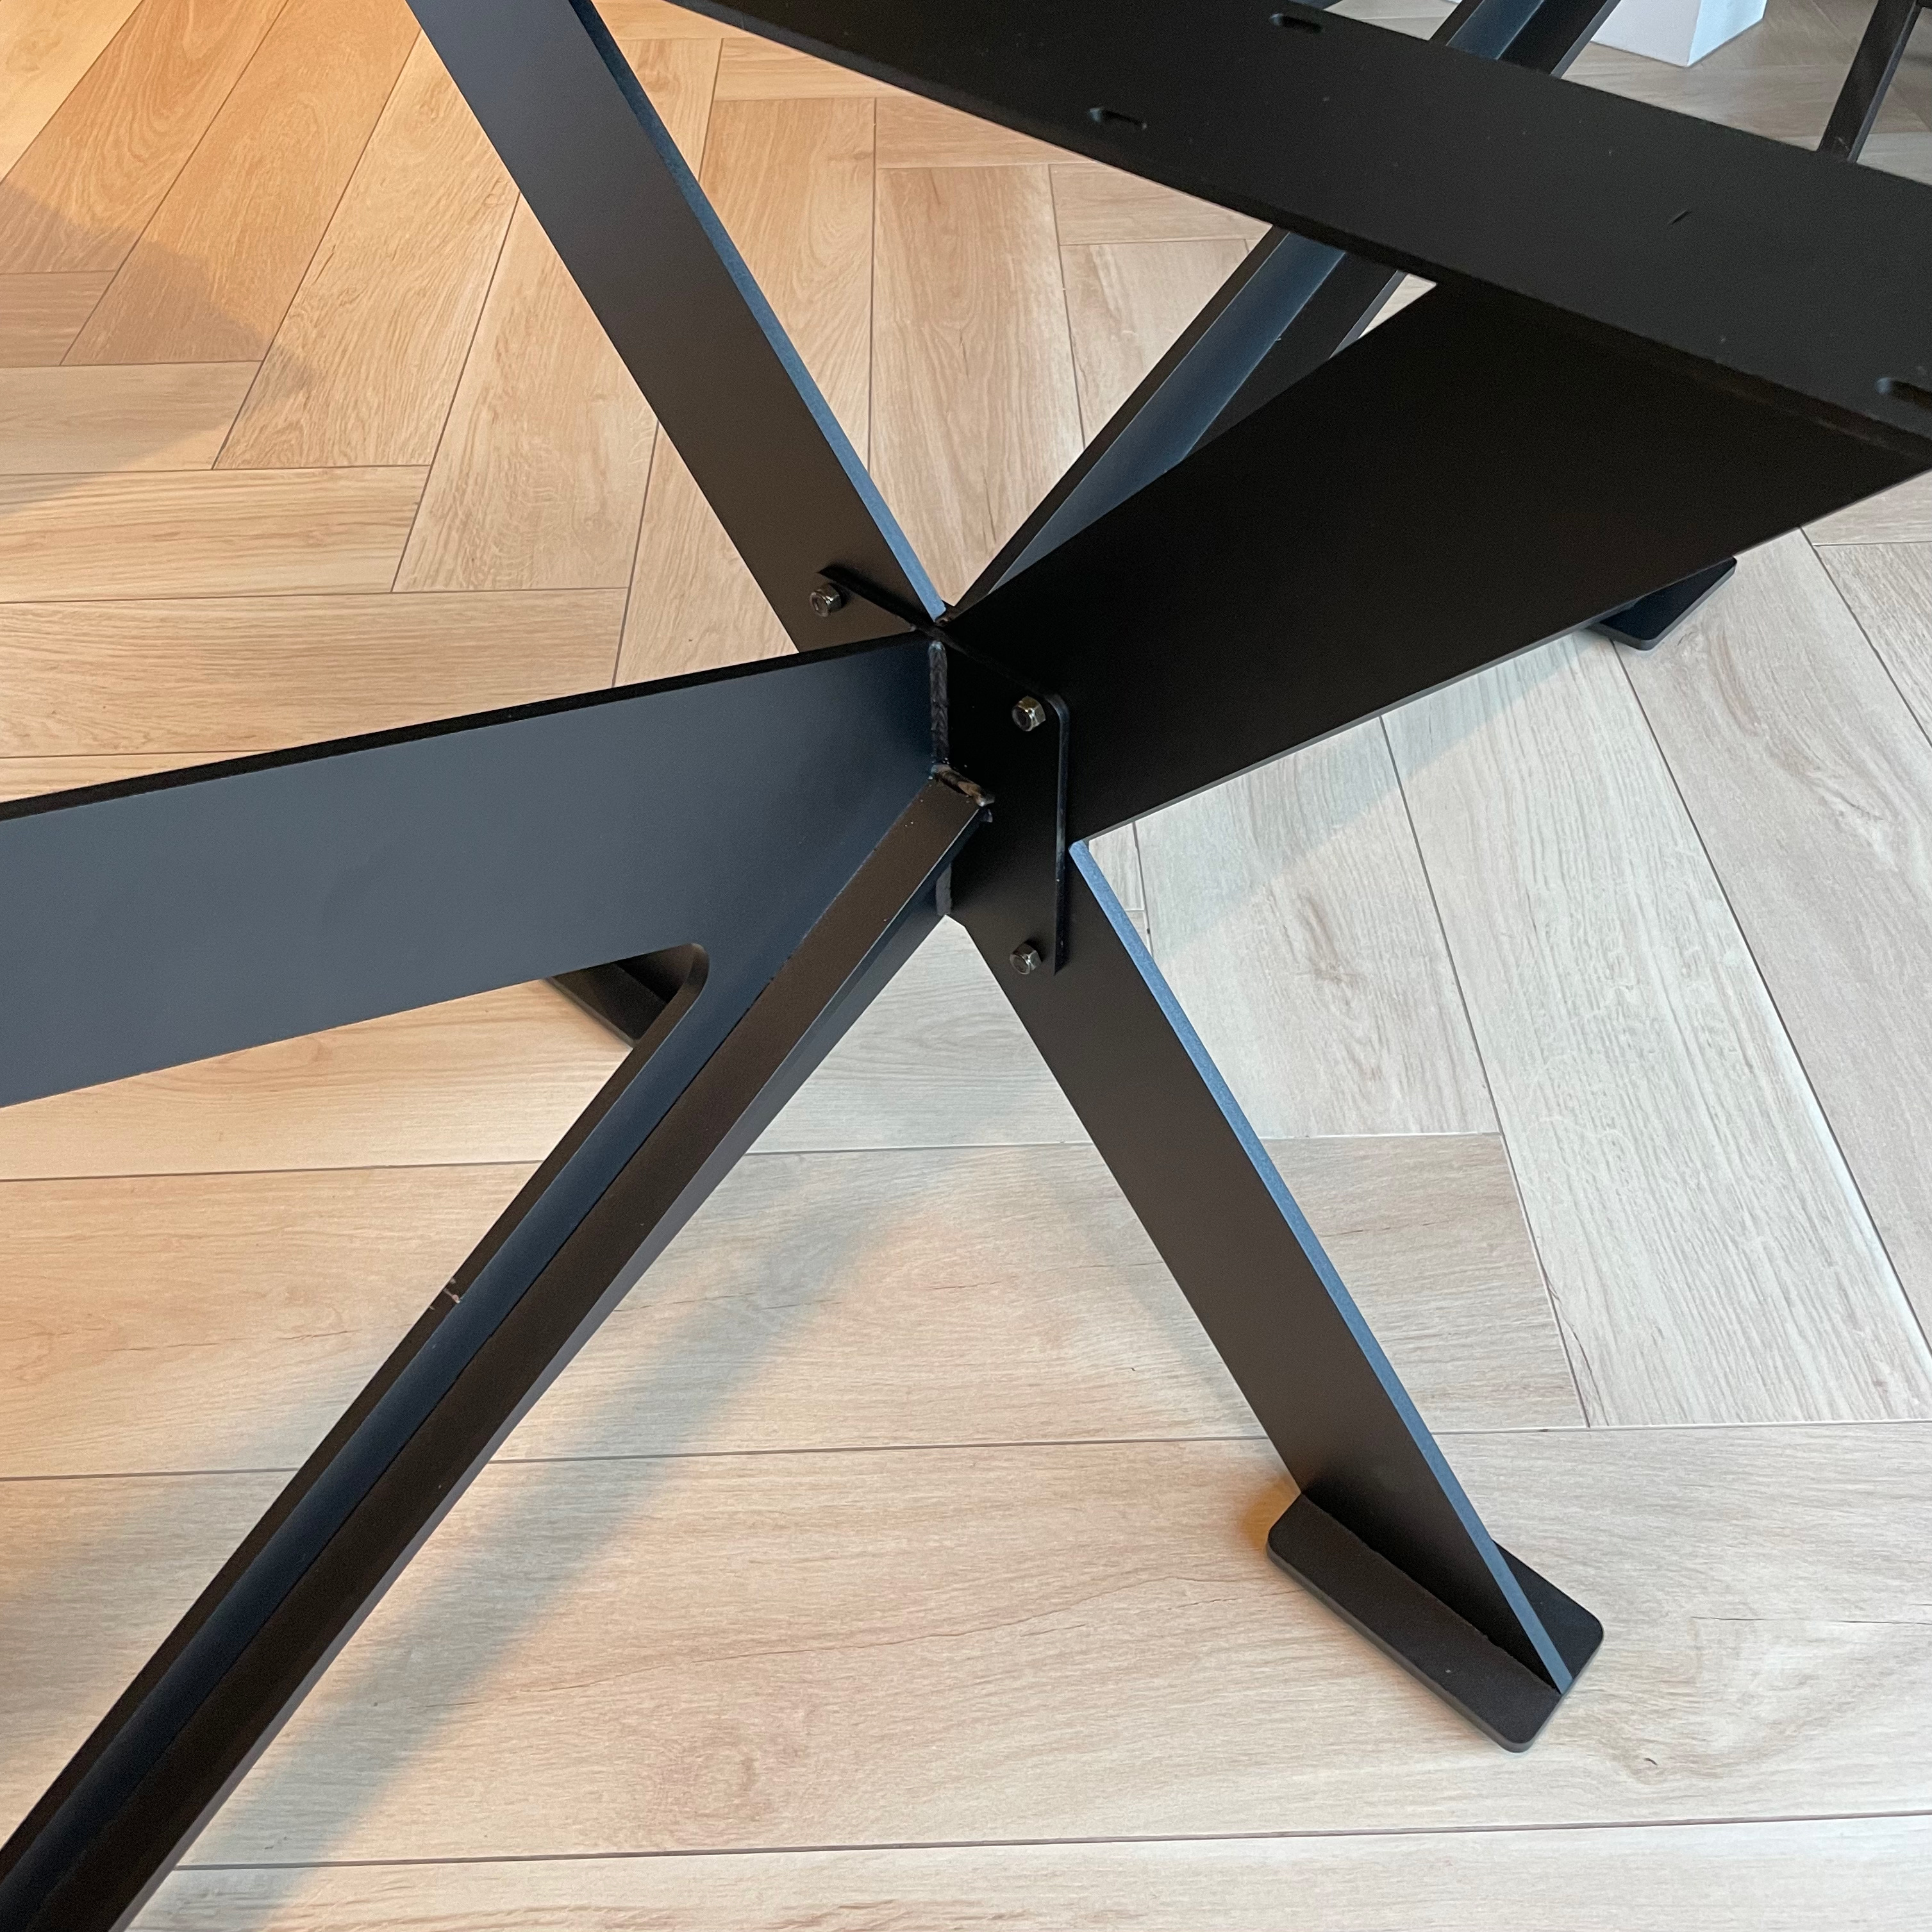  Tischgestell Metall Spider Massiv - 3-Teilig - 1 cm dicker massiver Stahl - 80x180 cm - 72cm hoch - Stahl Tischuntergestell / Mittelfuß Rechteck & oval - Schwarz